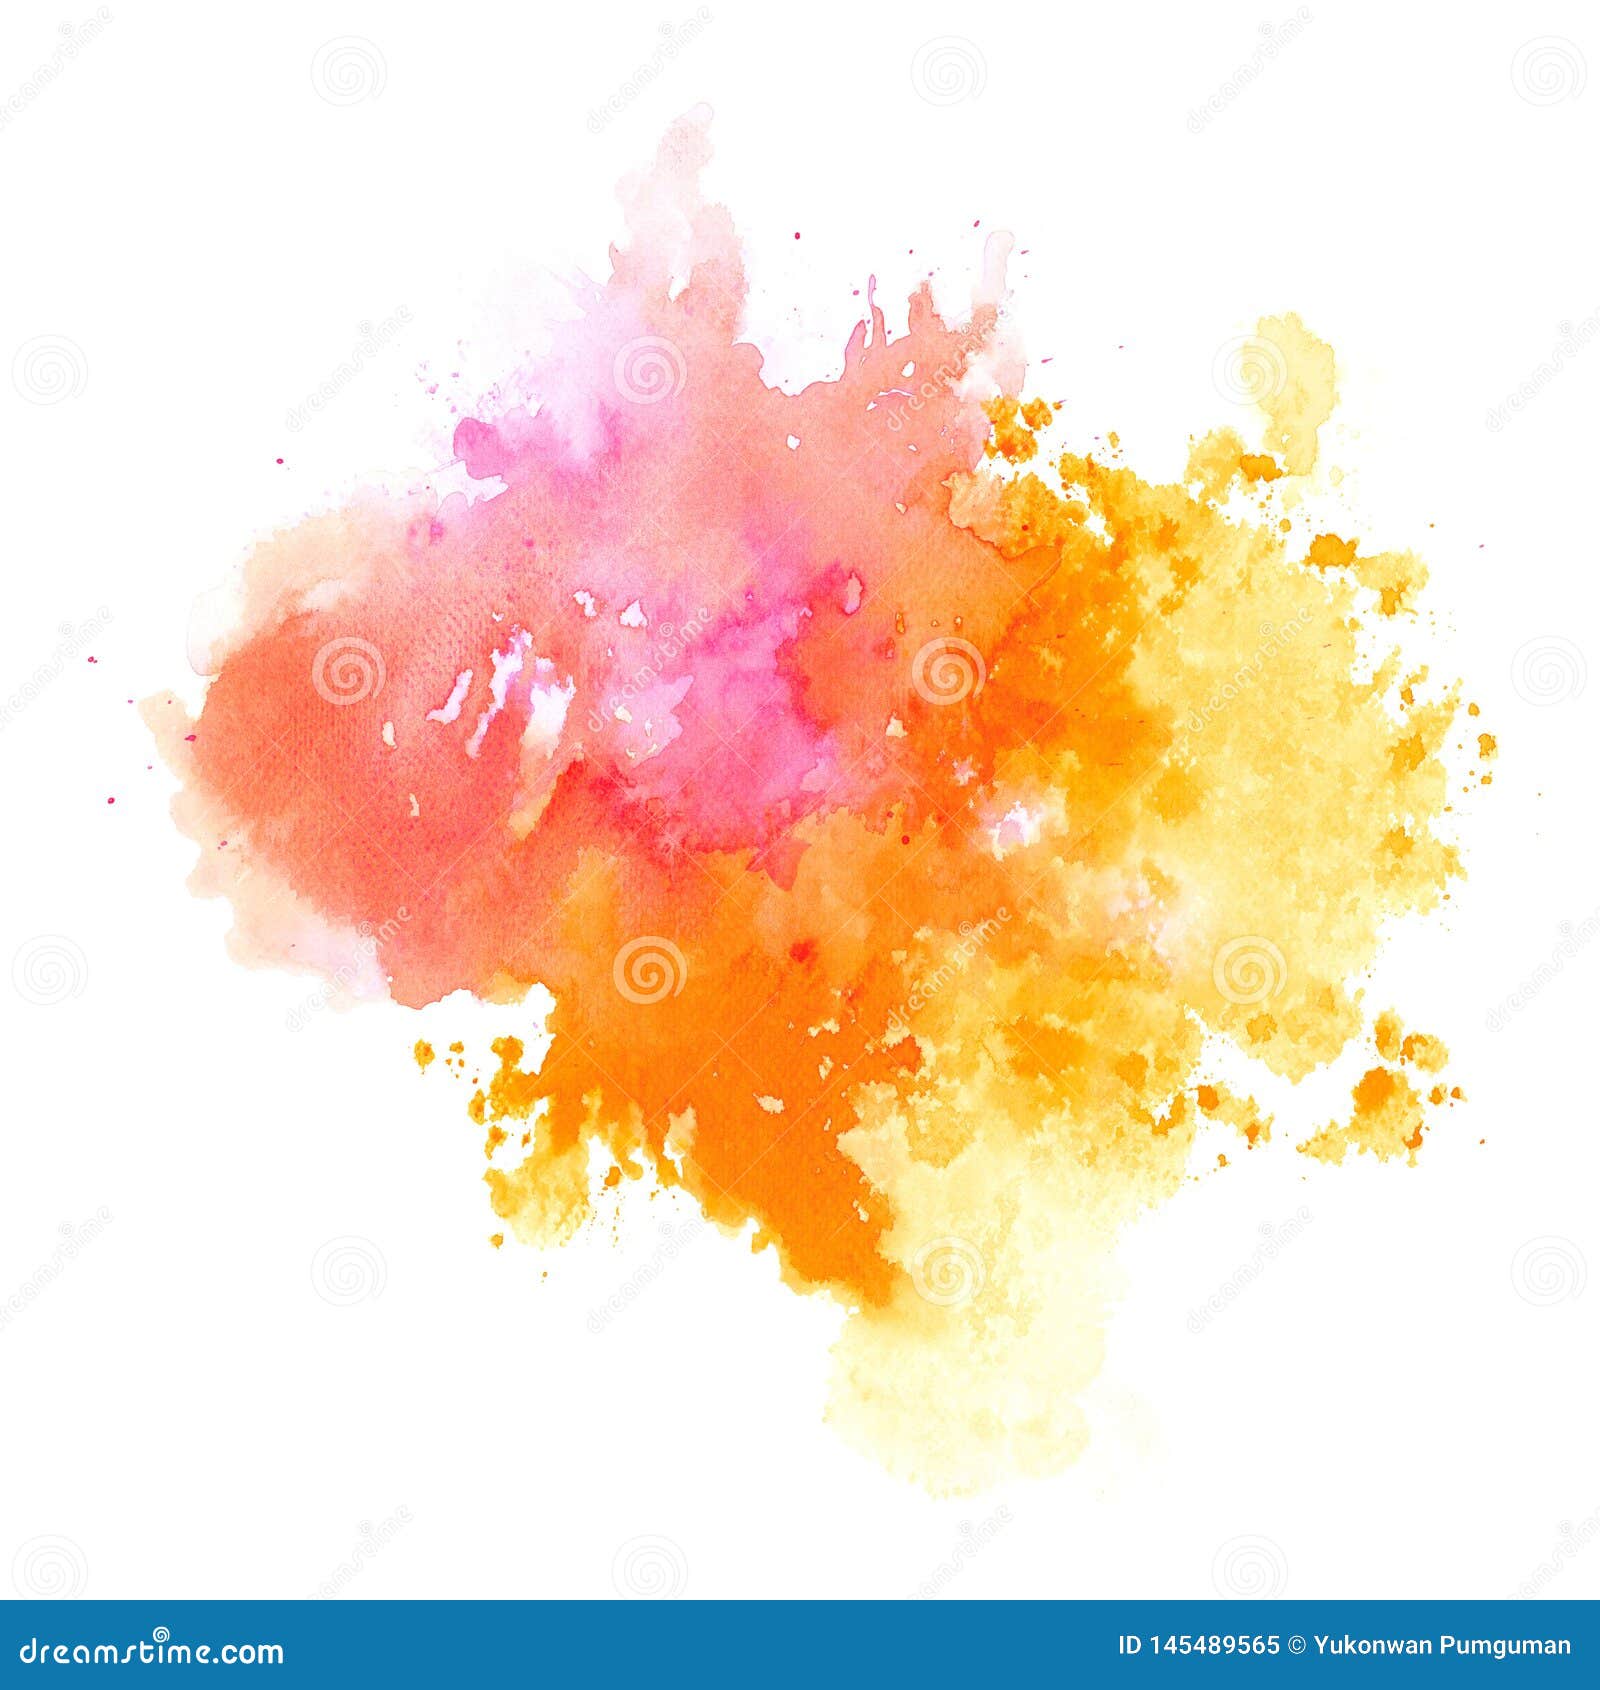 791555 Orange Watercolor Background Images Stock Photos  Vectors   Shutterstock